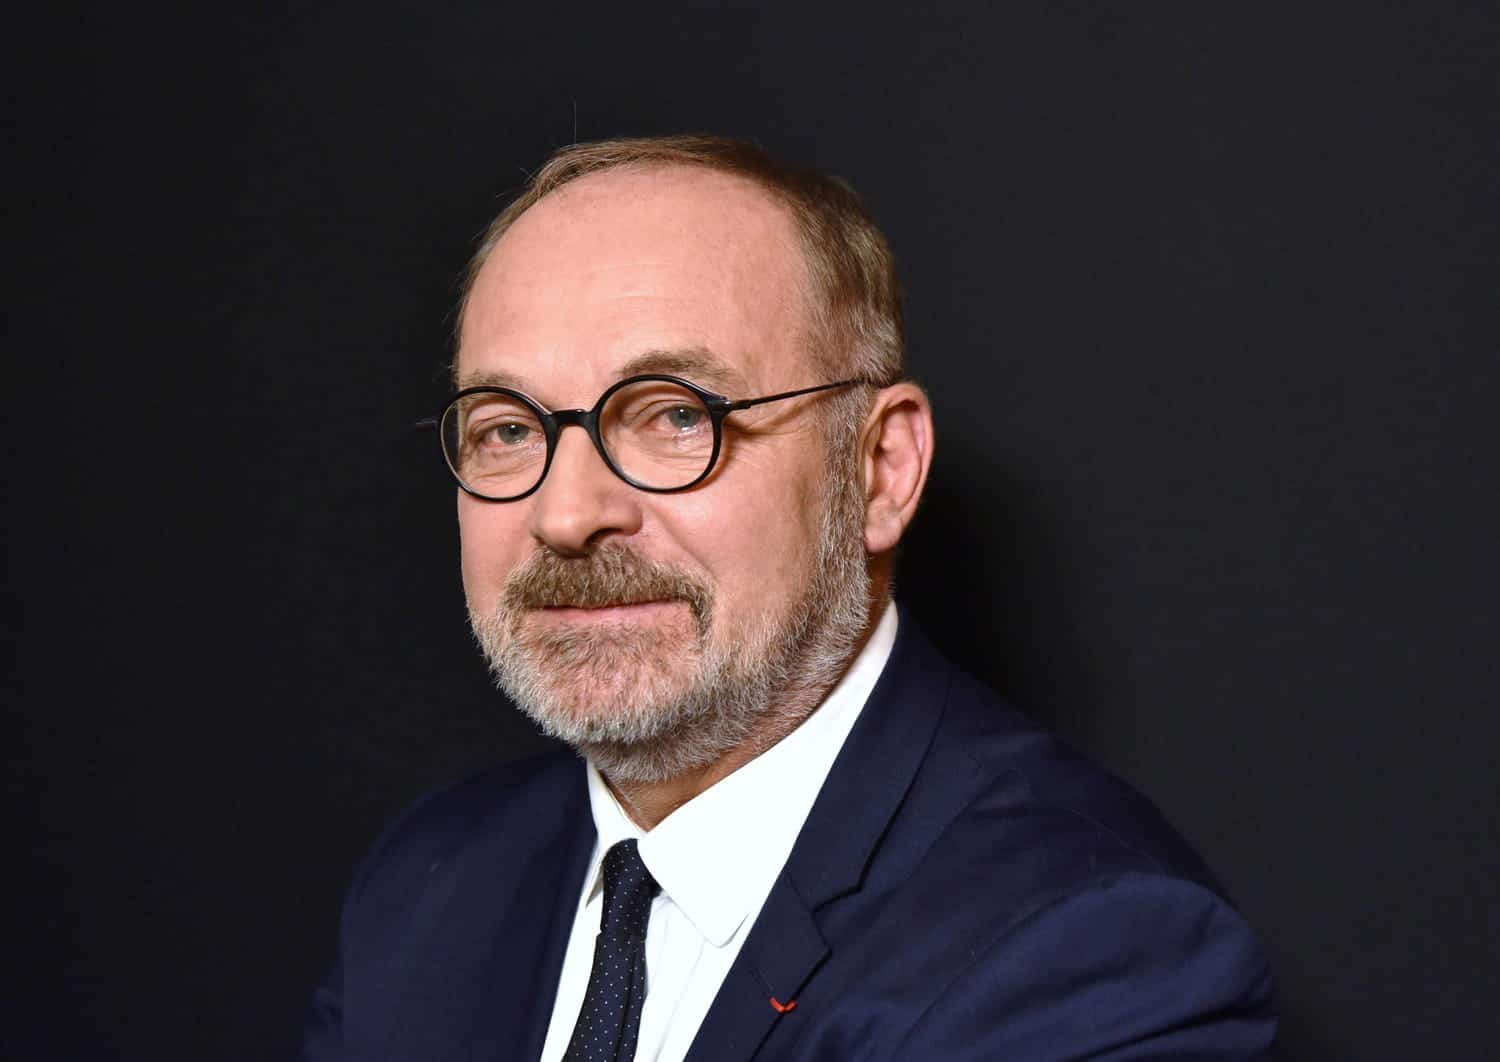 Le sénateur Joël Guerriau accusé d'avoir drogué une élue : l'avocat dément une tentative d'agression sexuelle